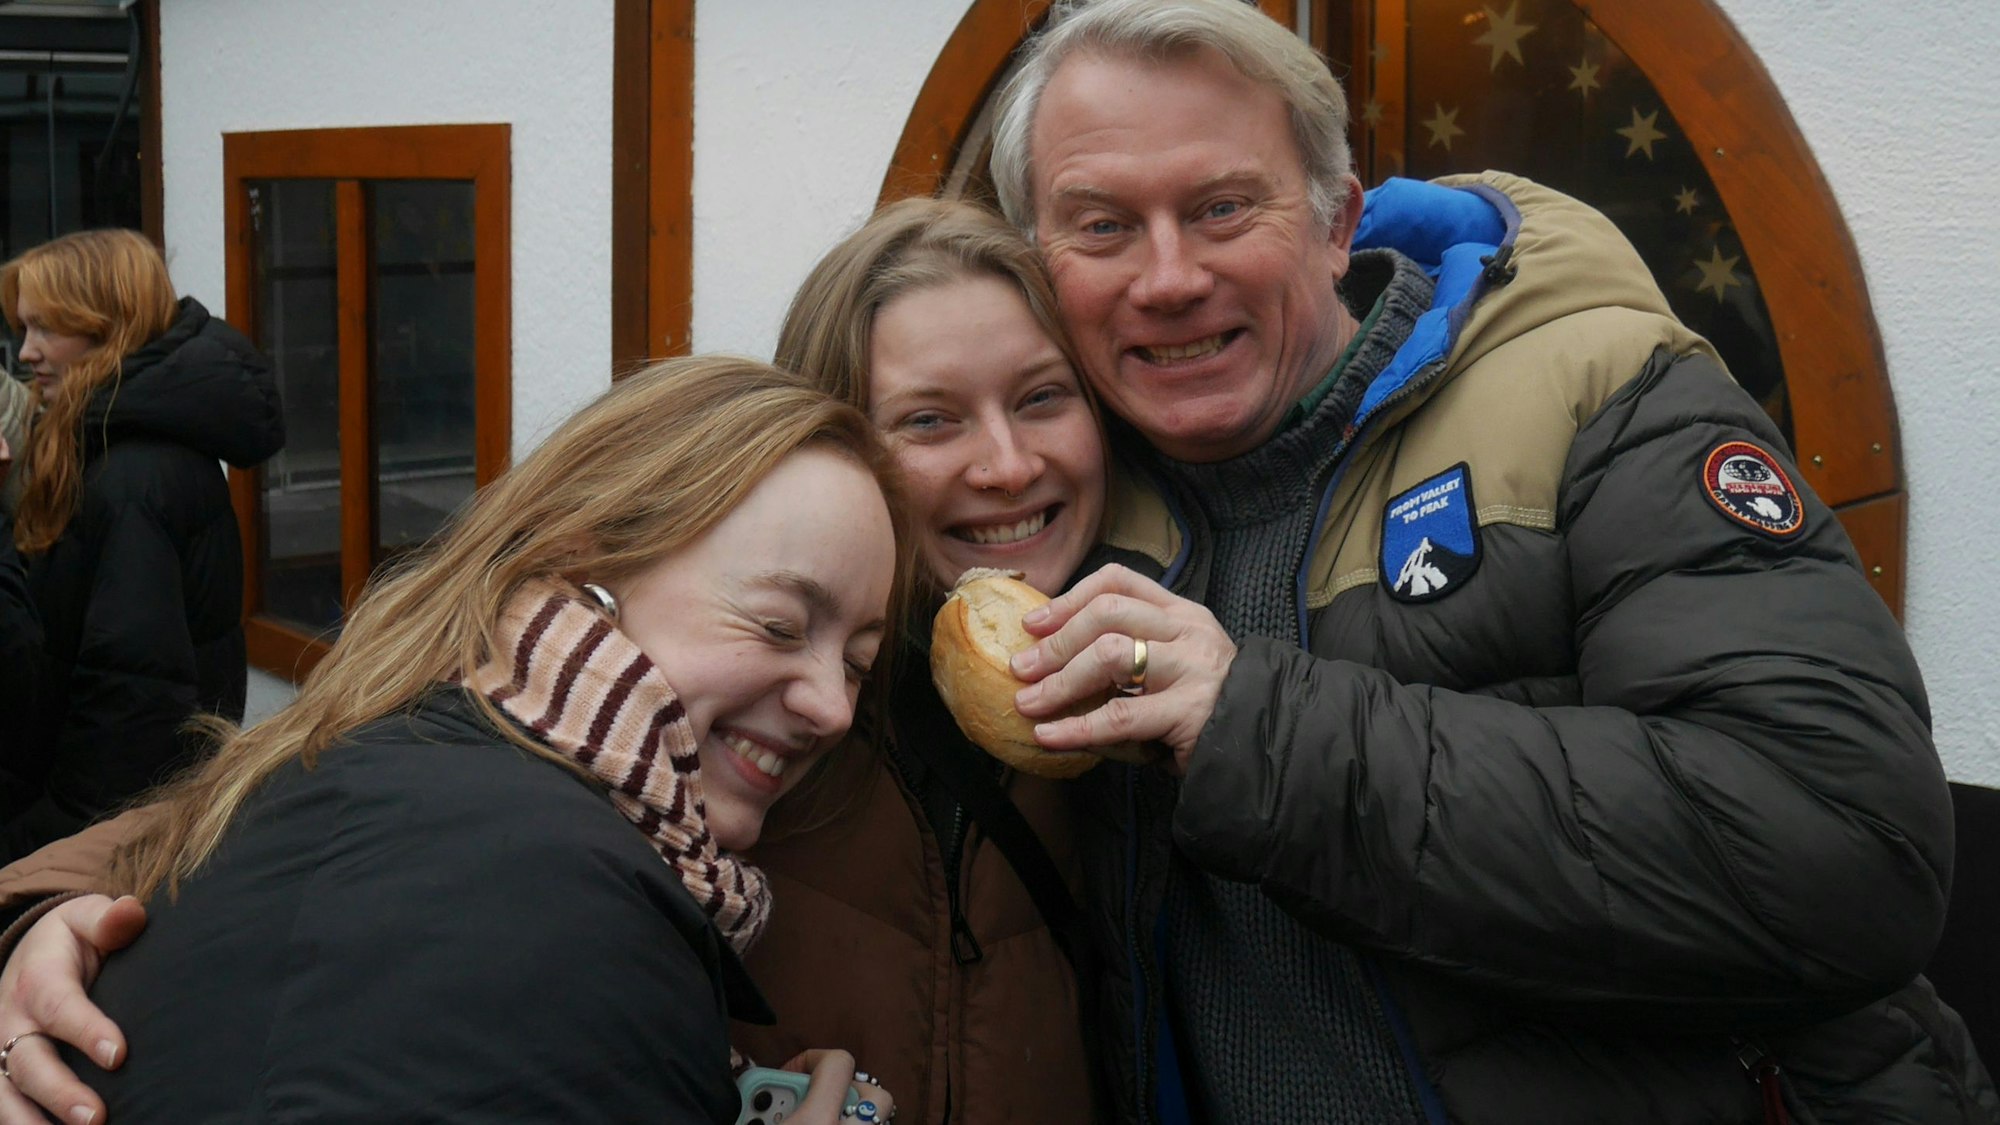 Zu sehen sich Emilie Kühl (Mitte), ihre Freundin Lotta und ihr Vater Christophe.